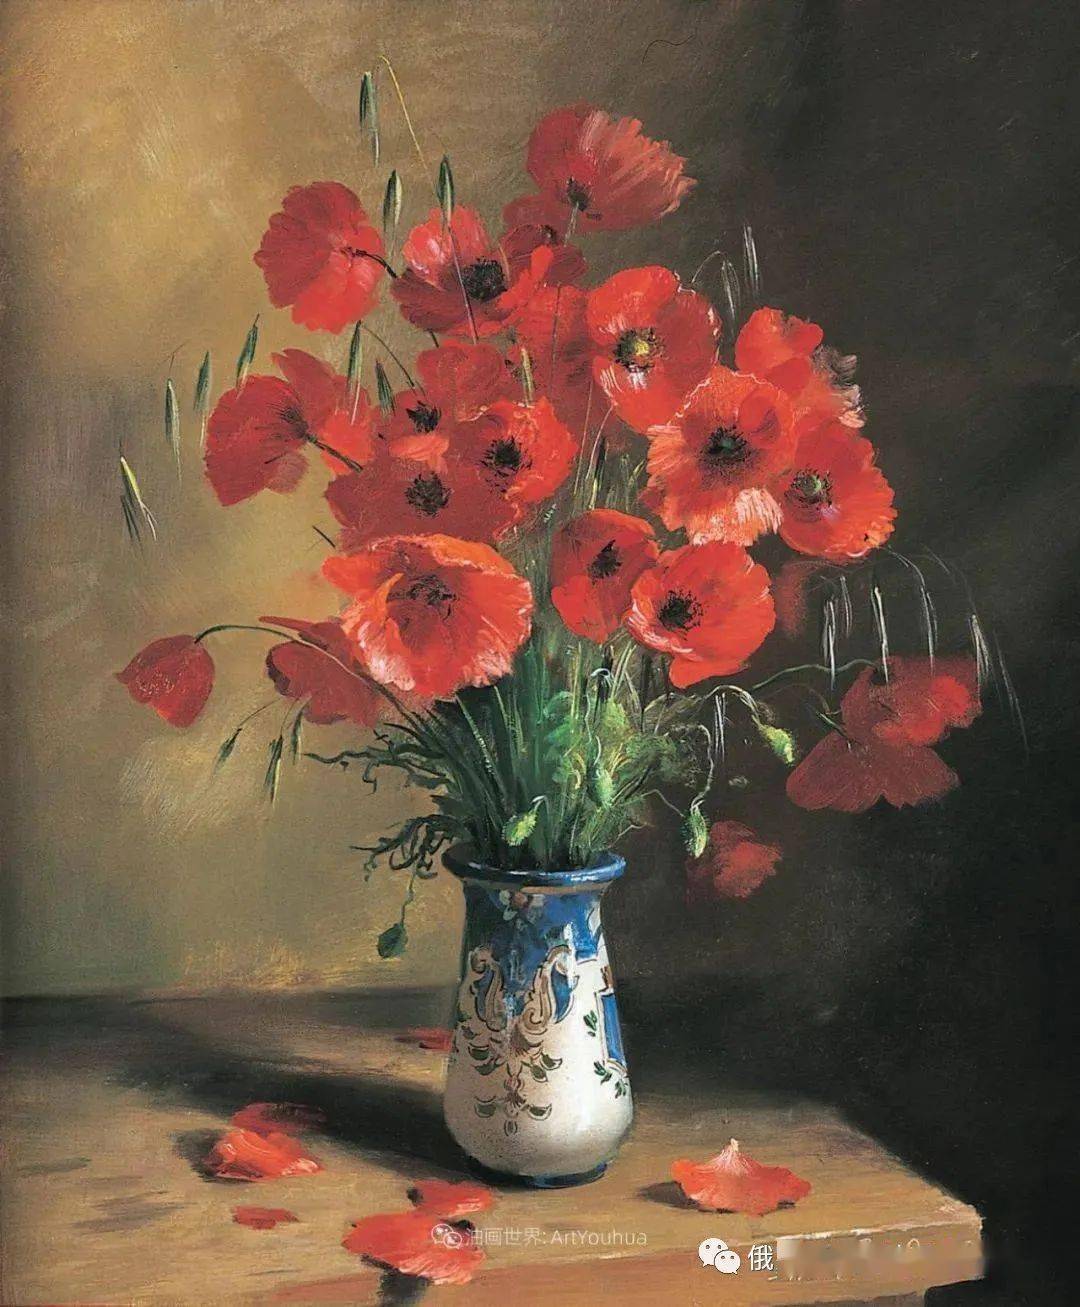 俄罗斯画家谢尔盖图图诺夫花卉静物油画作品欣赏